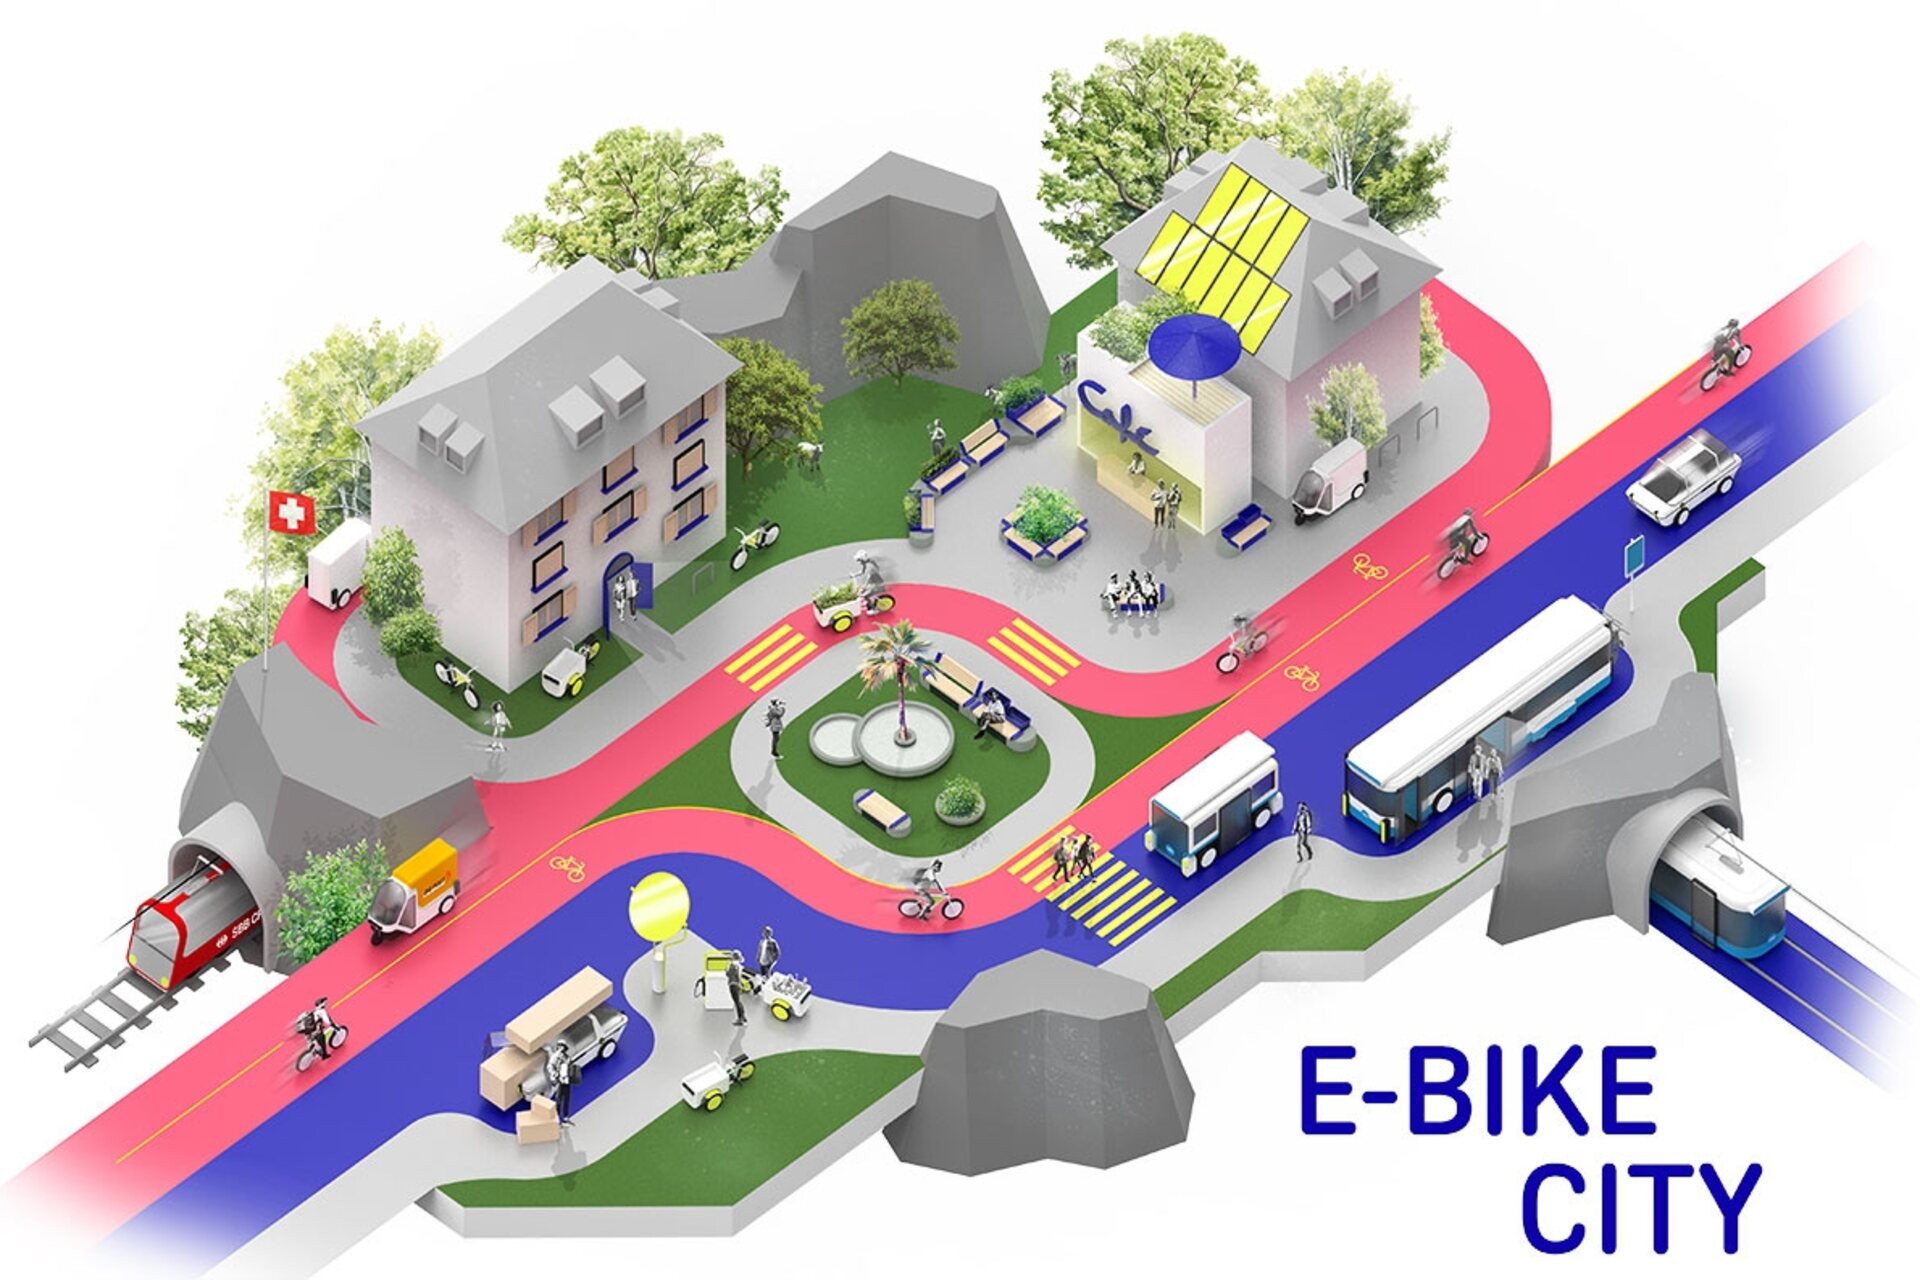 इलेक्ट्रिक साइकिलें: कारों के लिए एक-तरफ़ा सड़कें और साइकिलों के लिए दो-तरफ़ा सड़कों के साथ ई-बाइक सिटी का एक स्टाइलिश उदाहरण